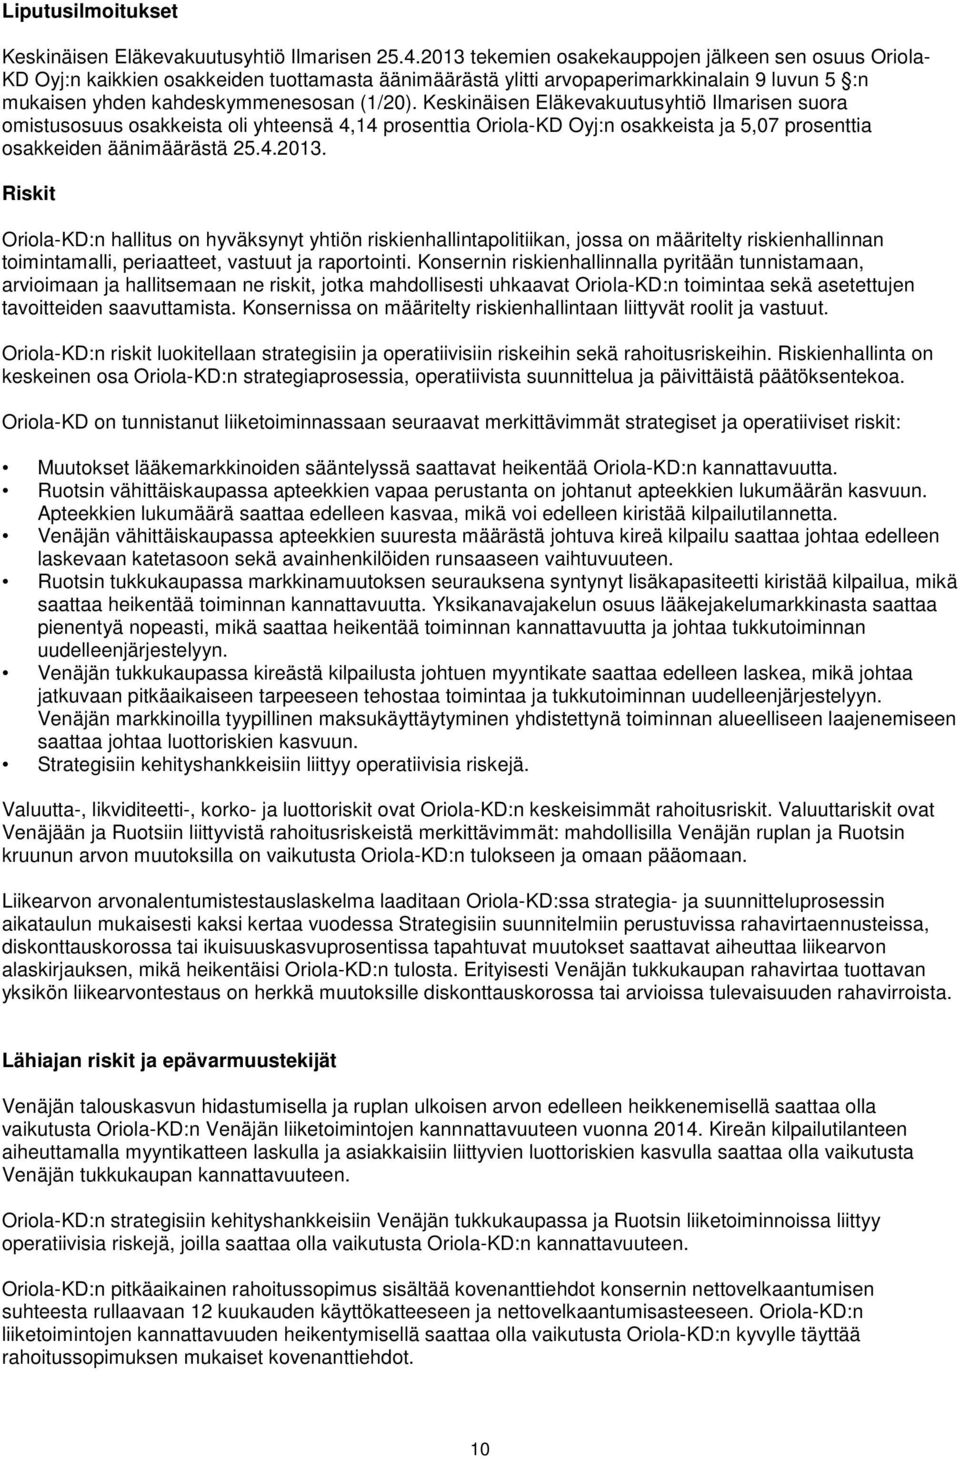 Keskinäisen Eläkevakuutusyhtiö Ilmarisen suora omistusosuus osakkeista oli yhteensä 4,14 prosenttia Oriola-KD Oyj:n osakkeista ja 5,07 prosenttia osakkeiden äänimäärästä 25.4.2013.